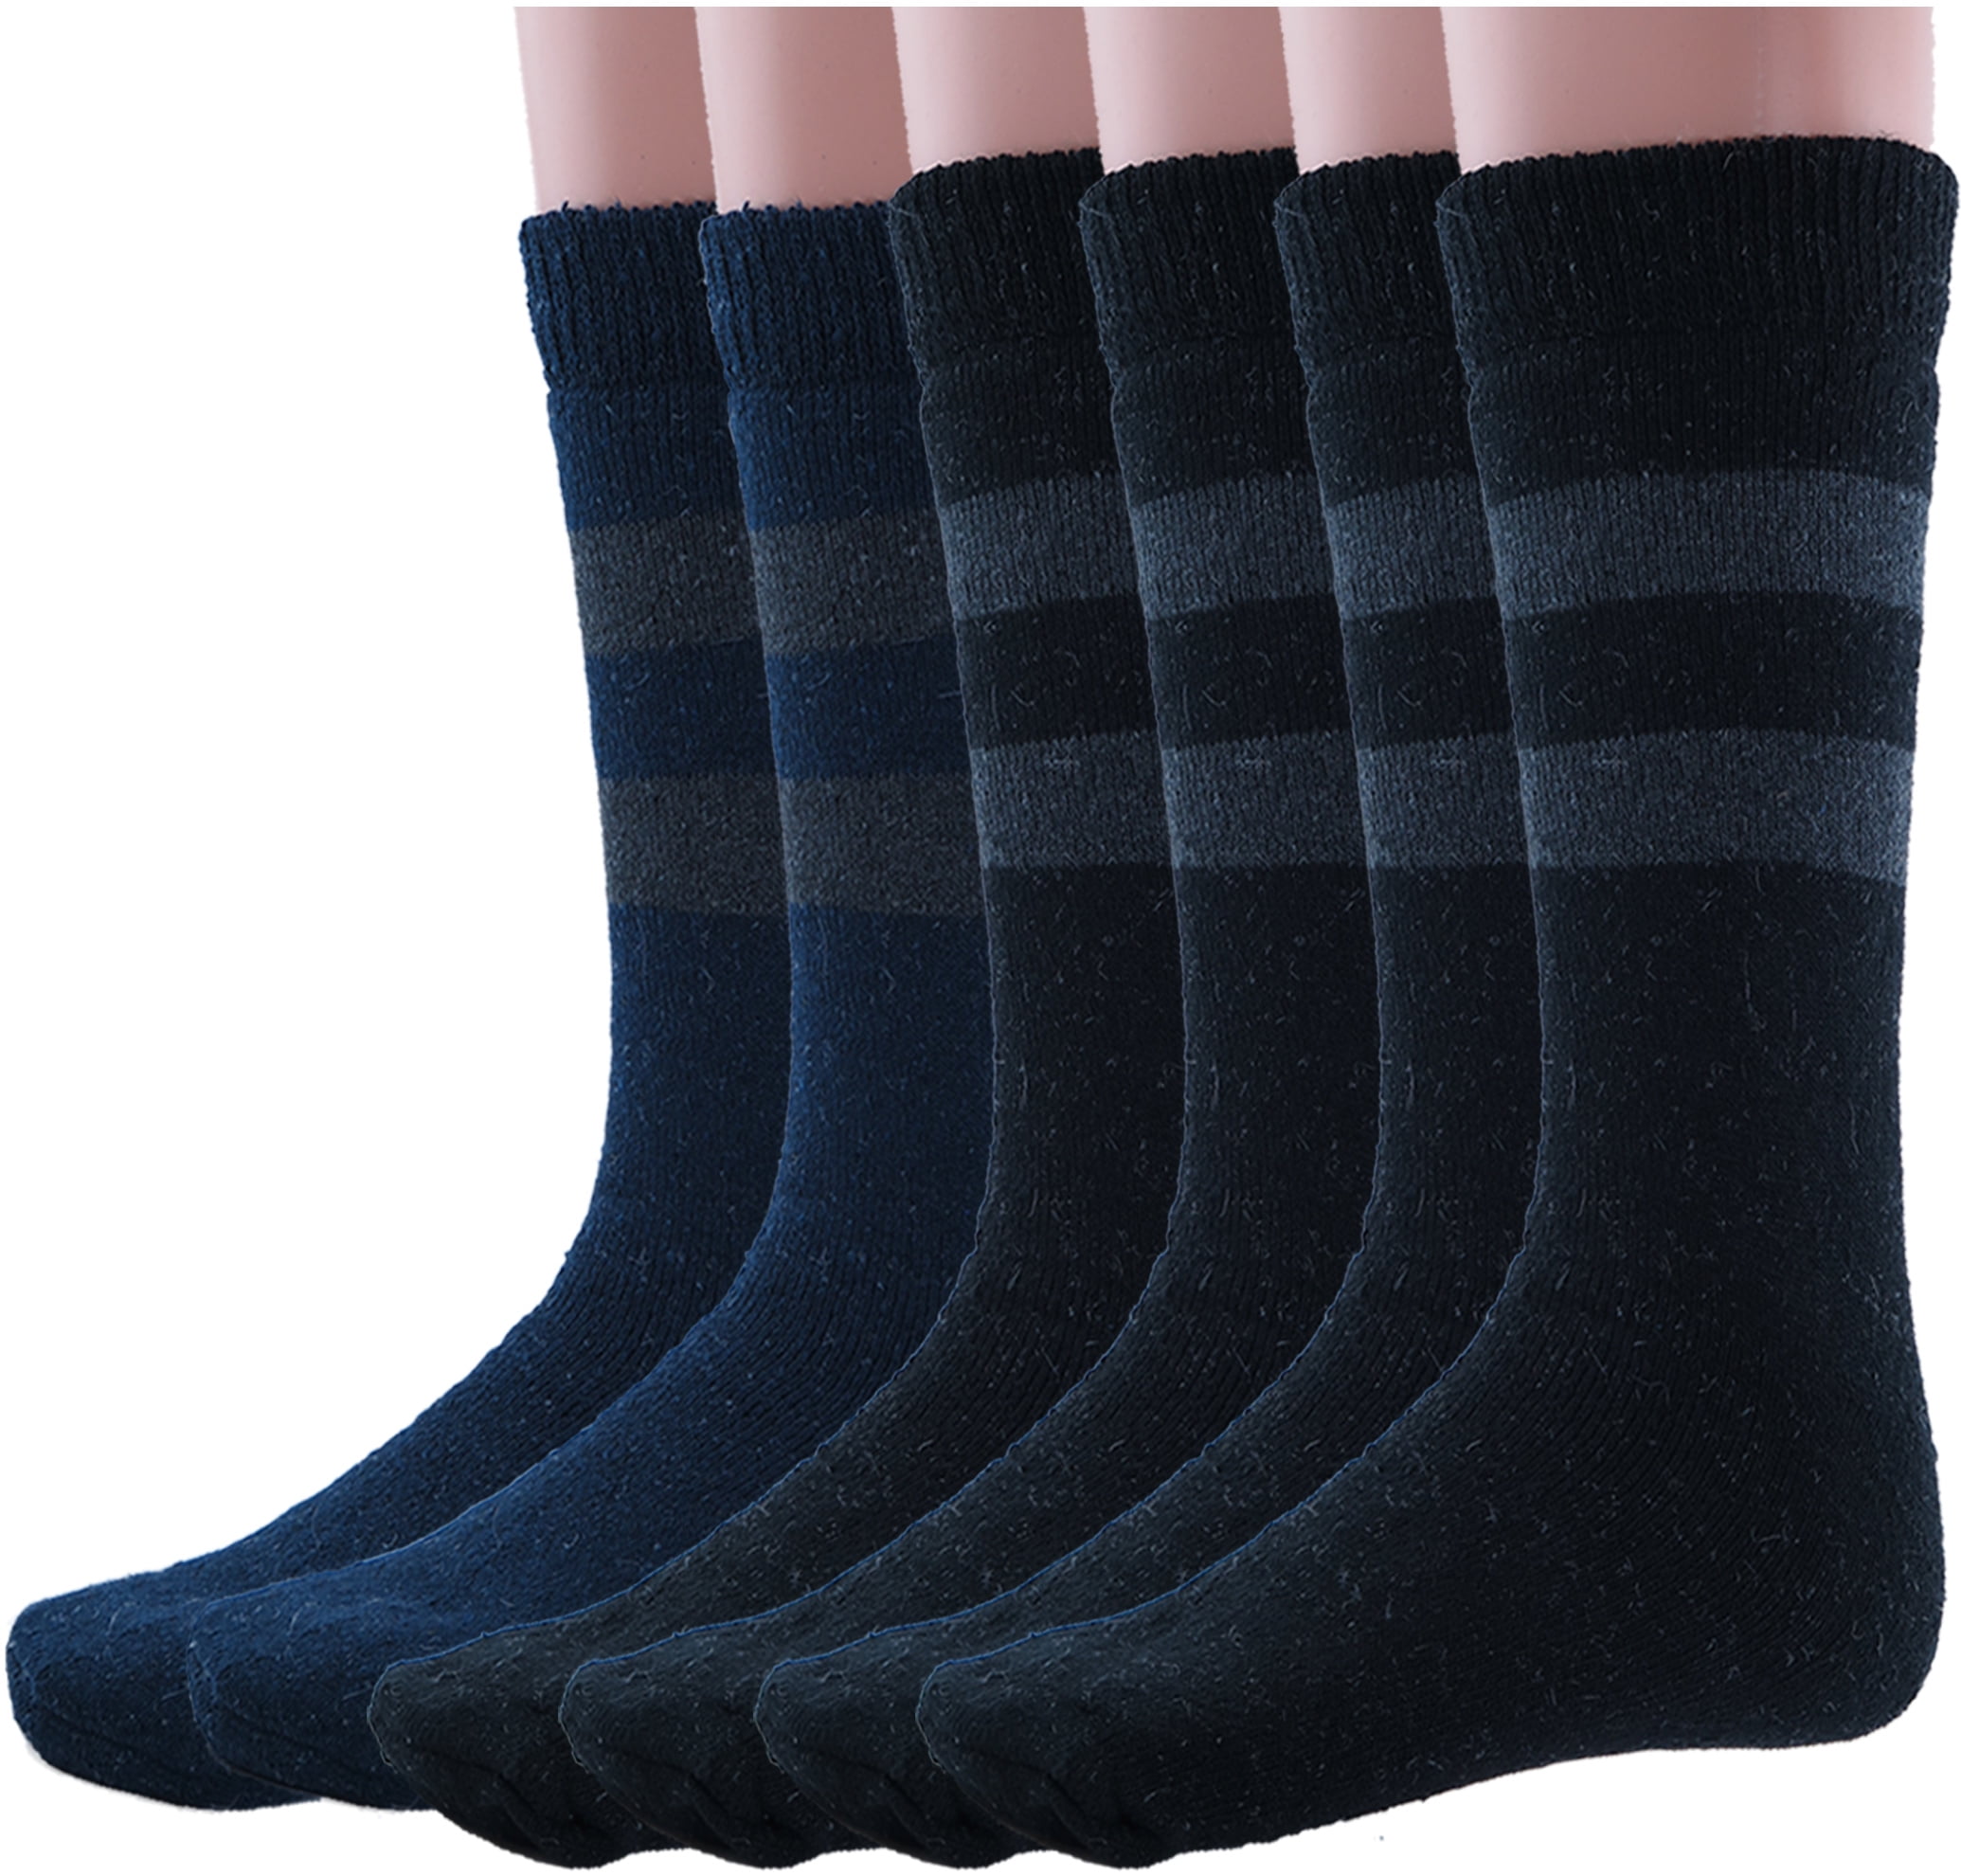 Debra Weitzner Wool Socks For Men and Women Thermal Winter Socks for ...